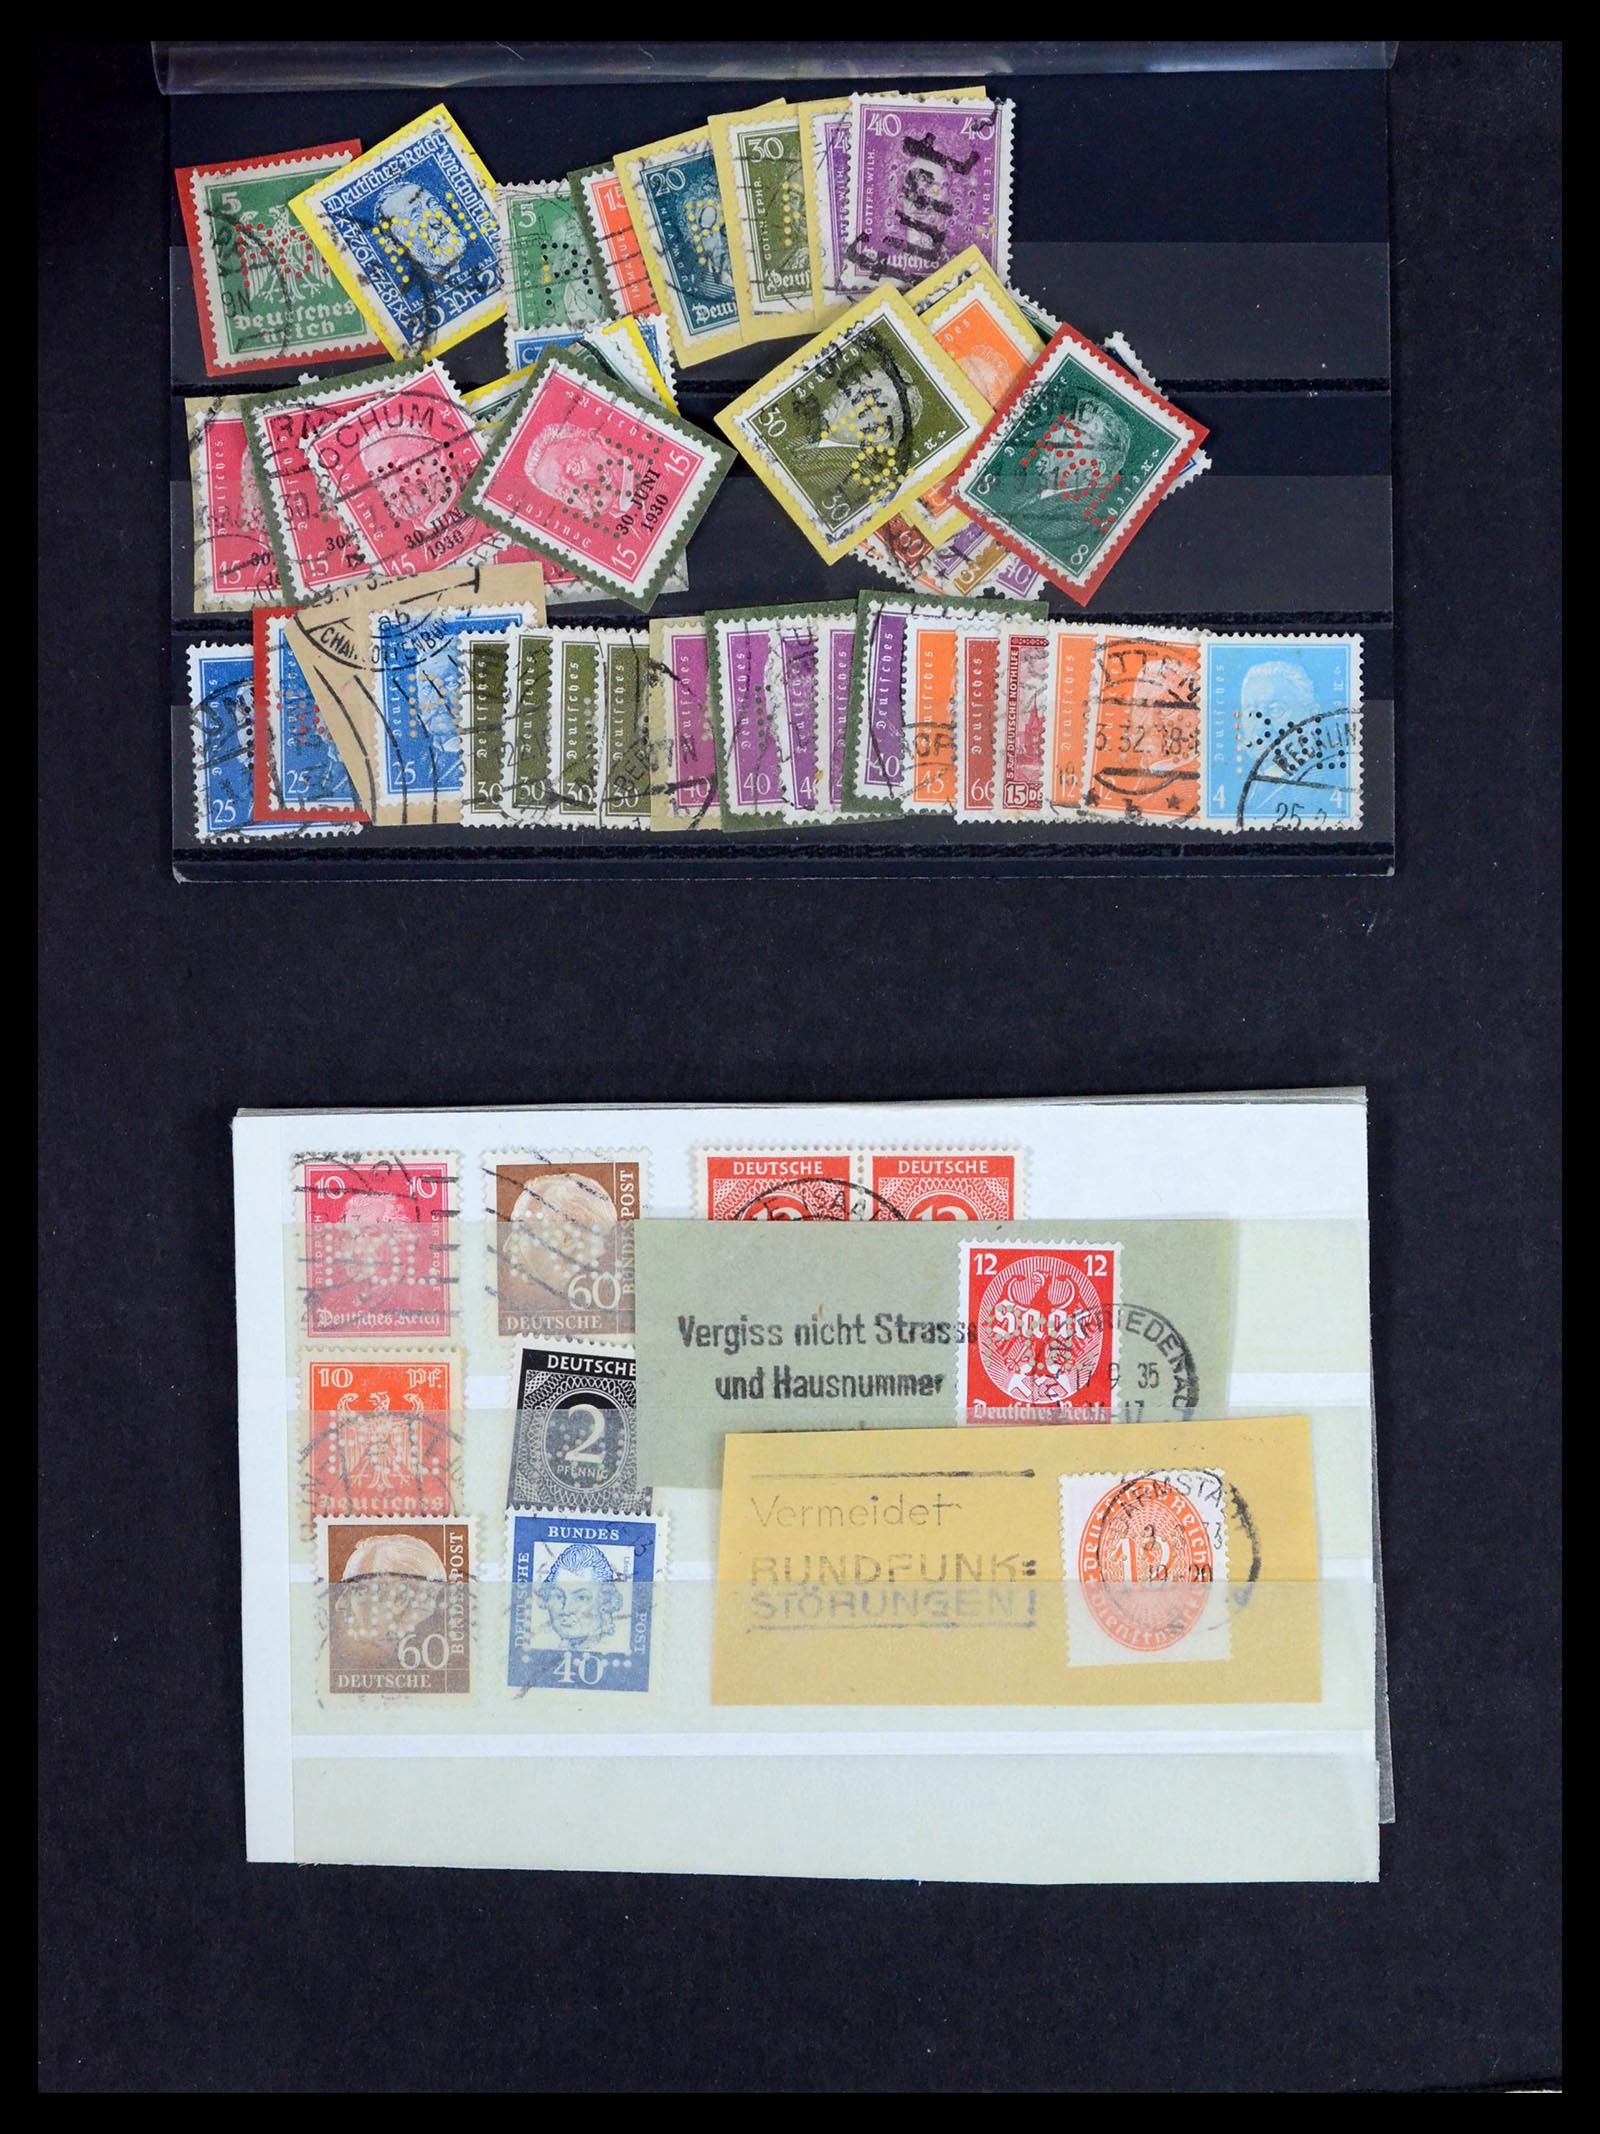 39458 0014 - Postzegelverzameling 39458 Duitsland POL lochungen 1926-1955.